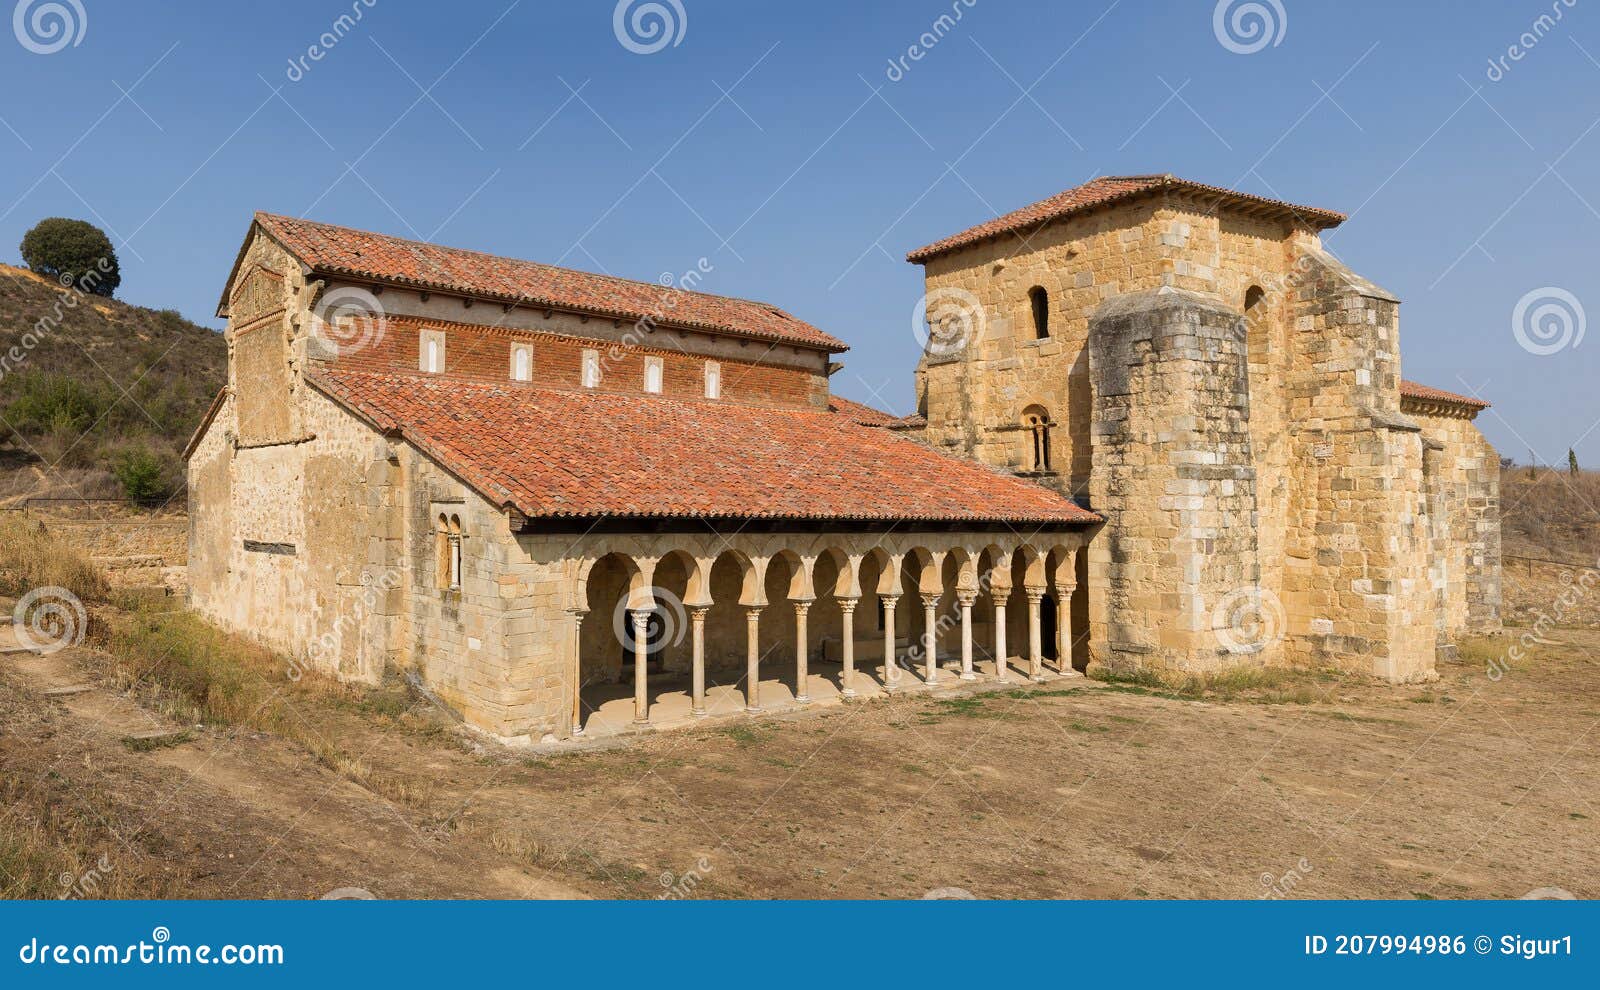 monastery of san miguel de escalada in leon